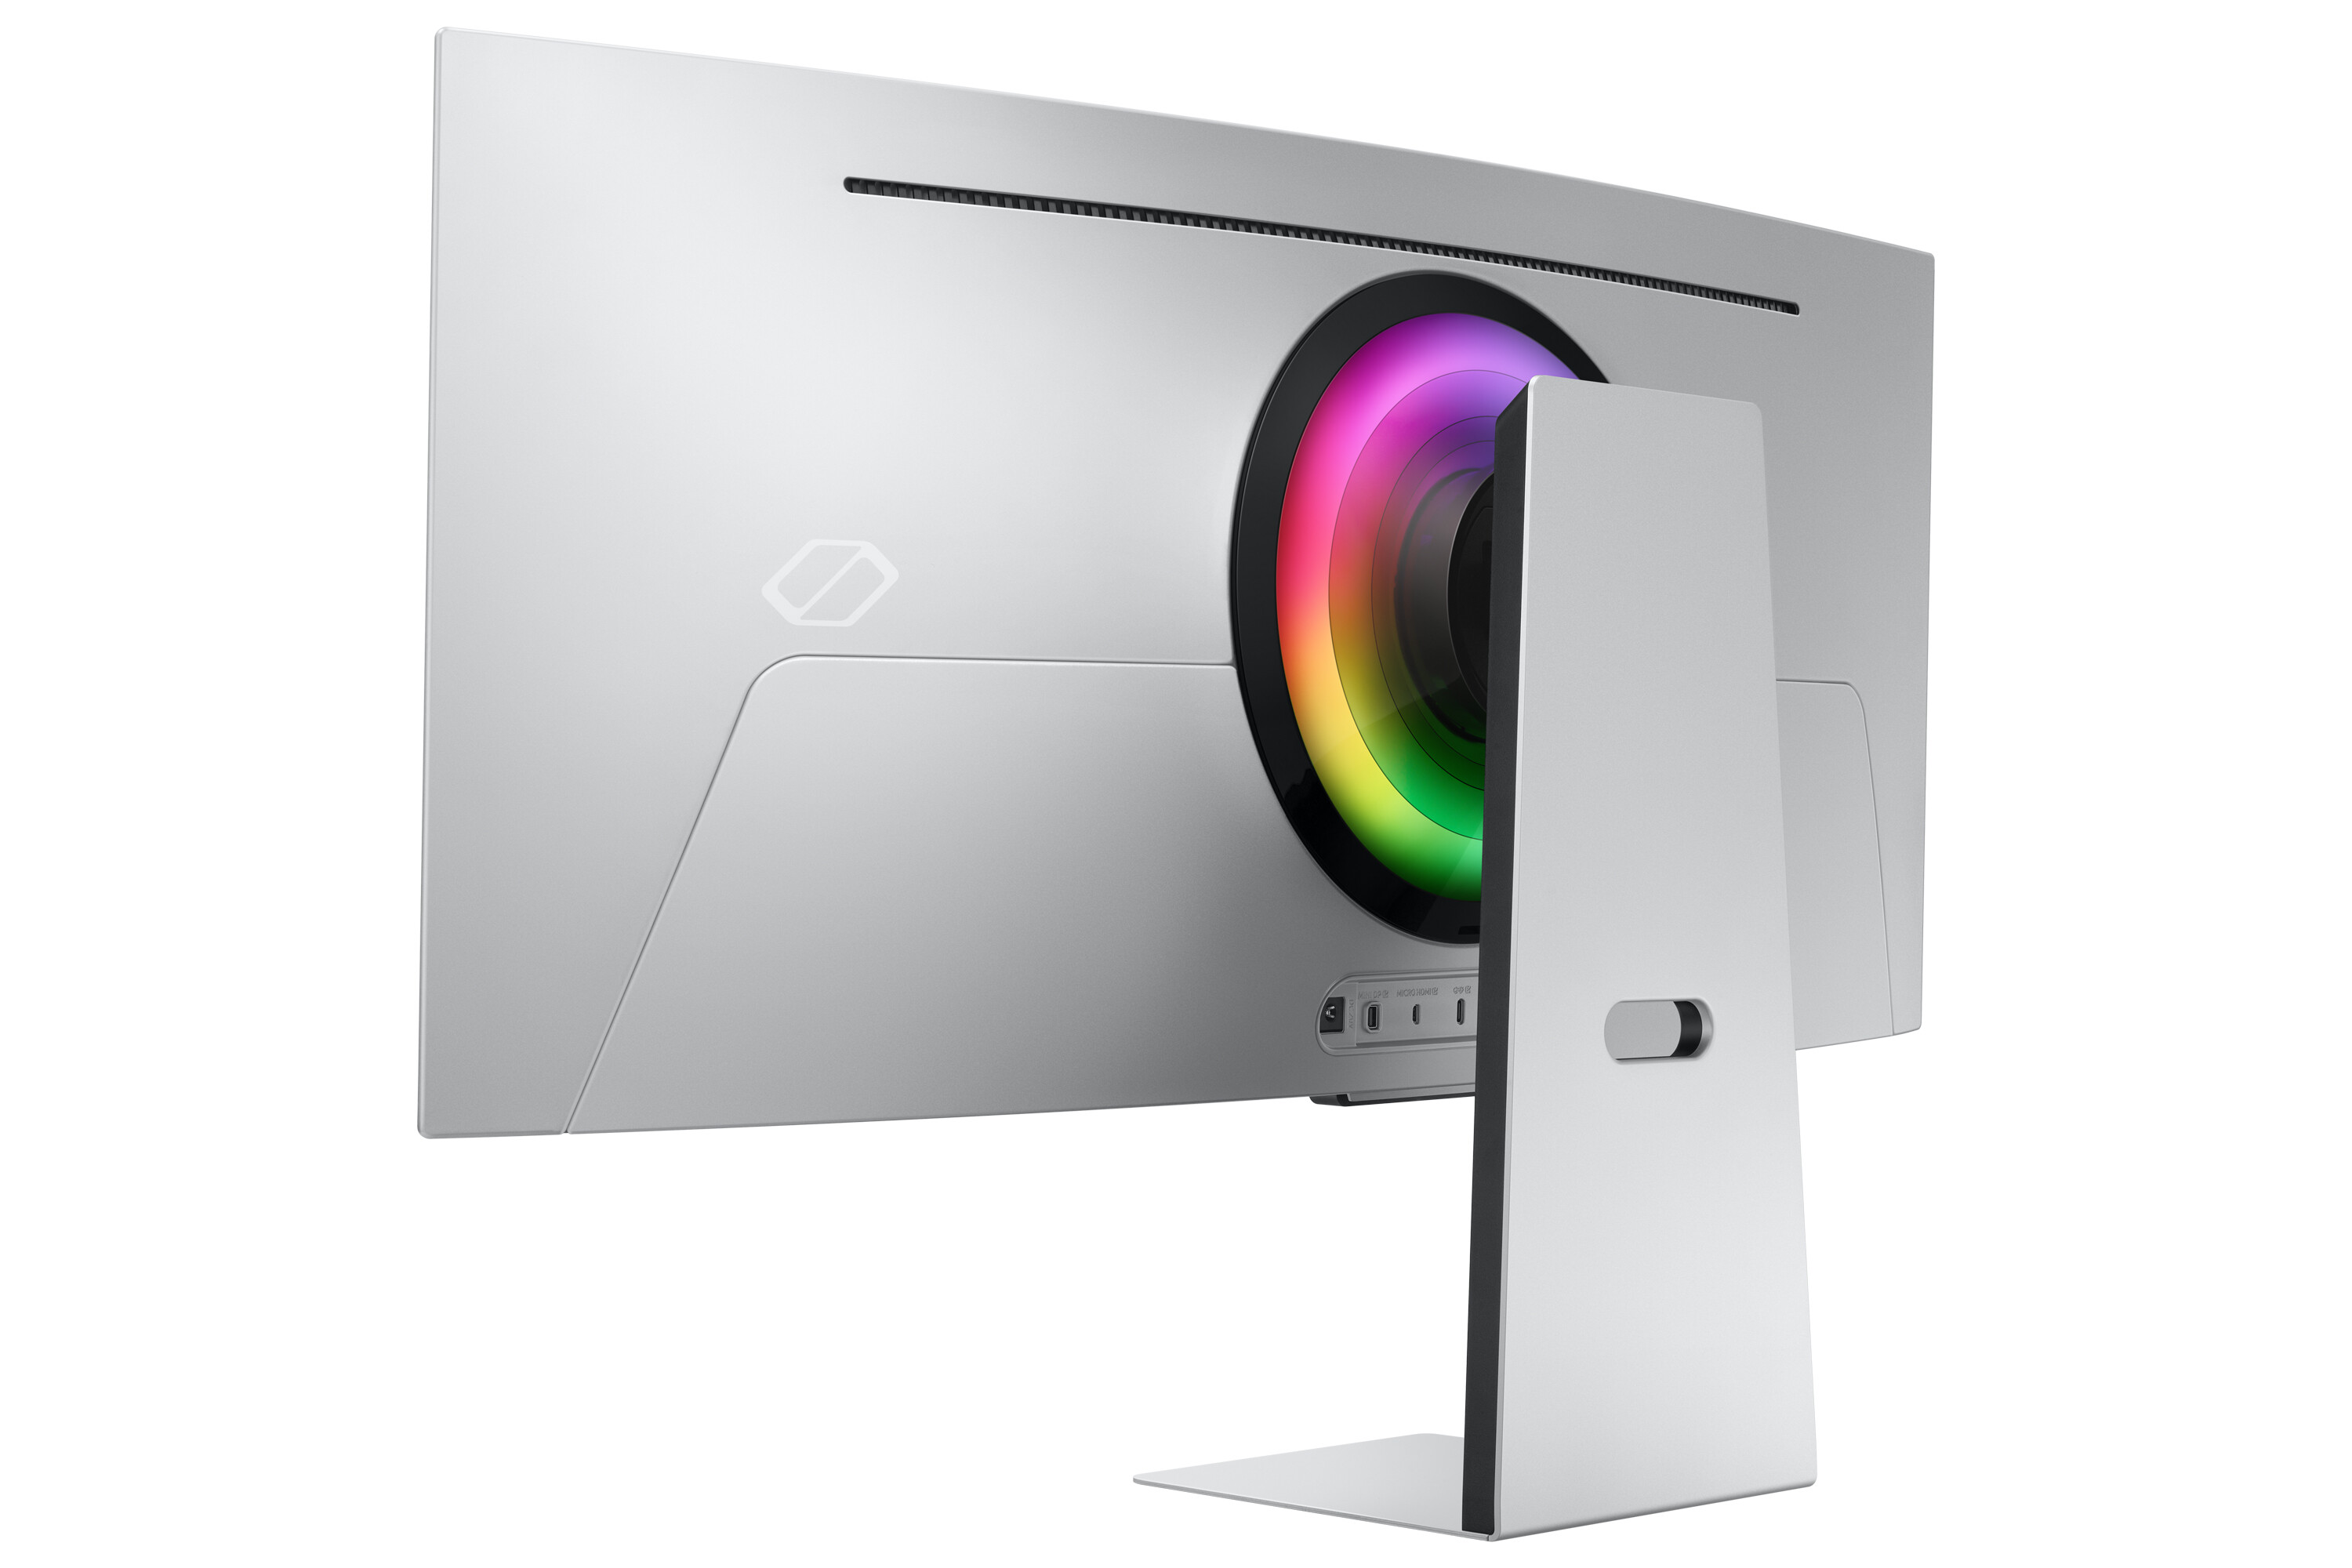 Immagine pubblicata in relazione al seguente contenuto: Samsung annuncia il gaming monitor QHD da 34-inch Odyssey OLED G8 | Nome immagine: news33619_Samsung_Odyssey-OLED-G8_4.jpg